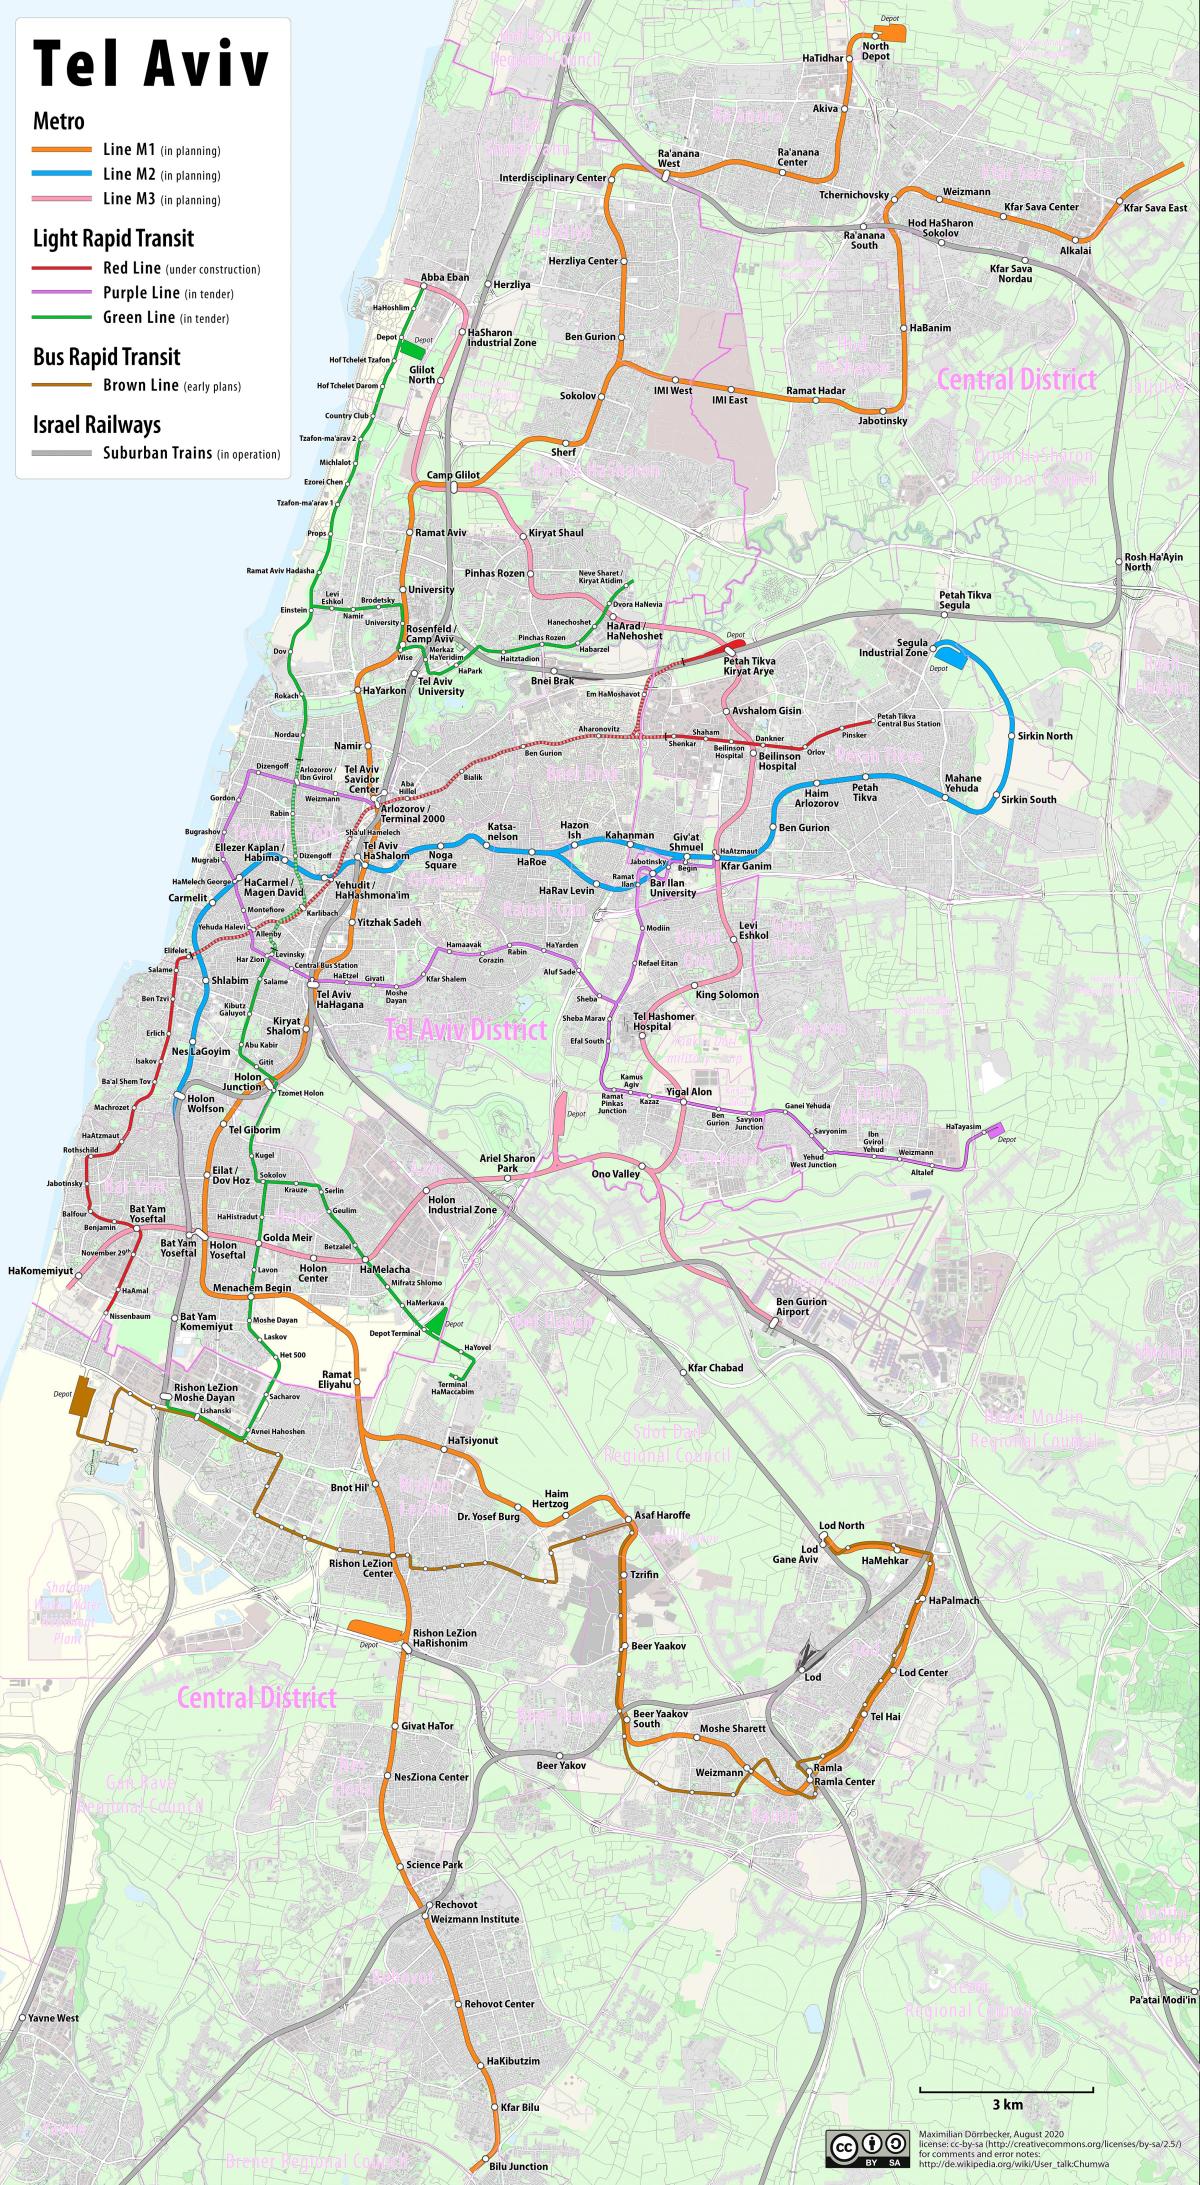 Tel Aviv transportation map